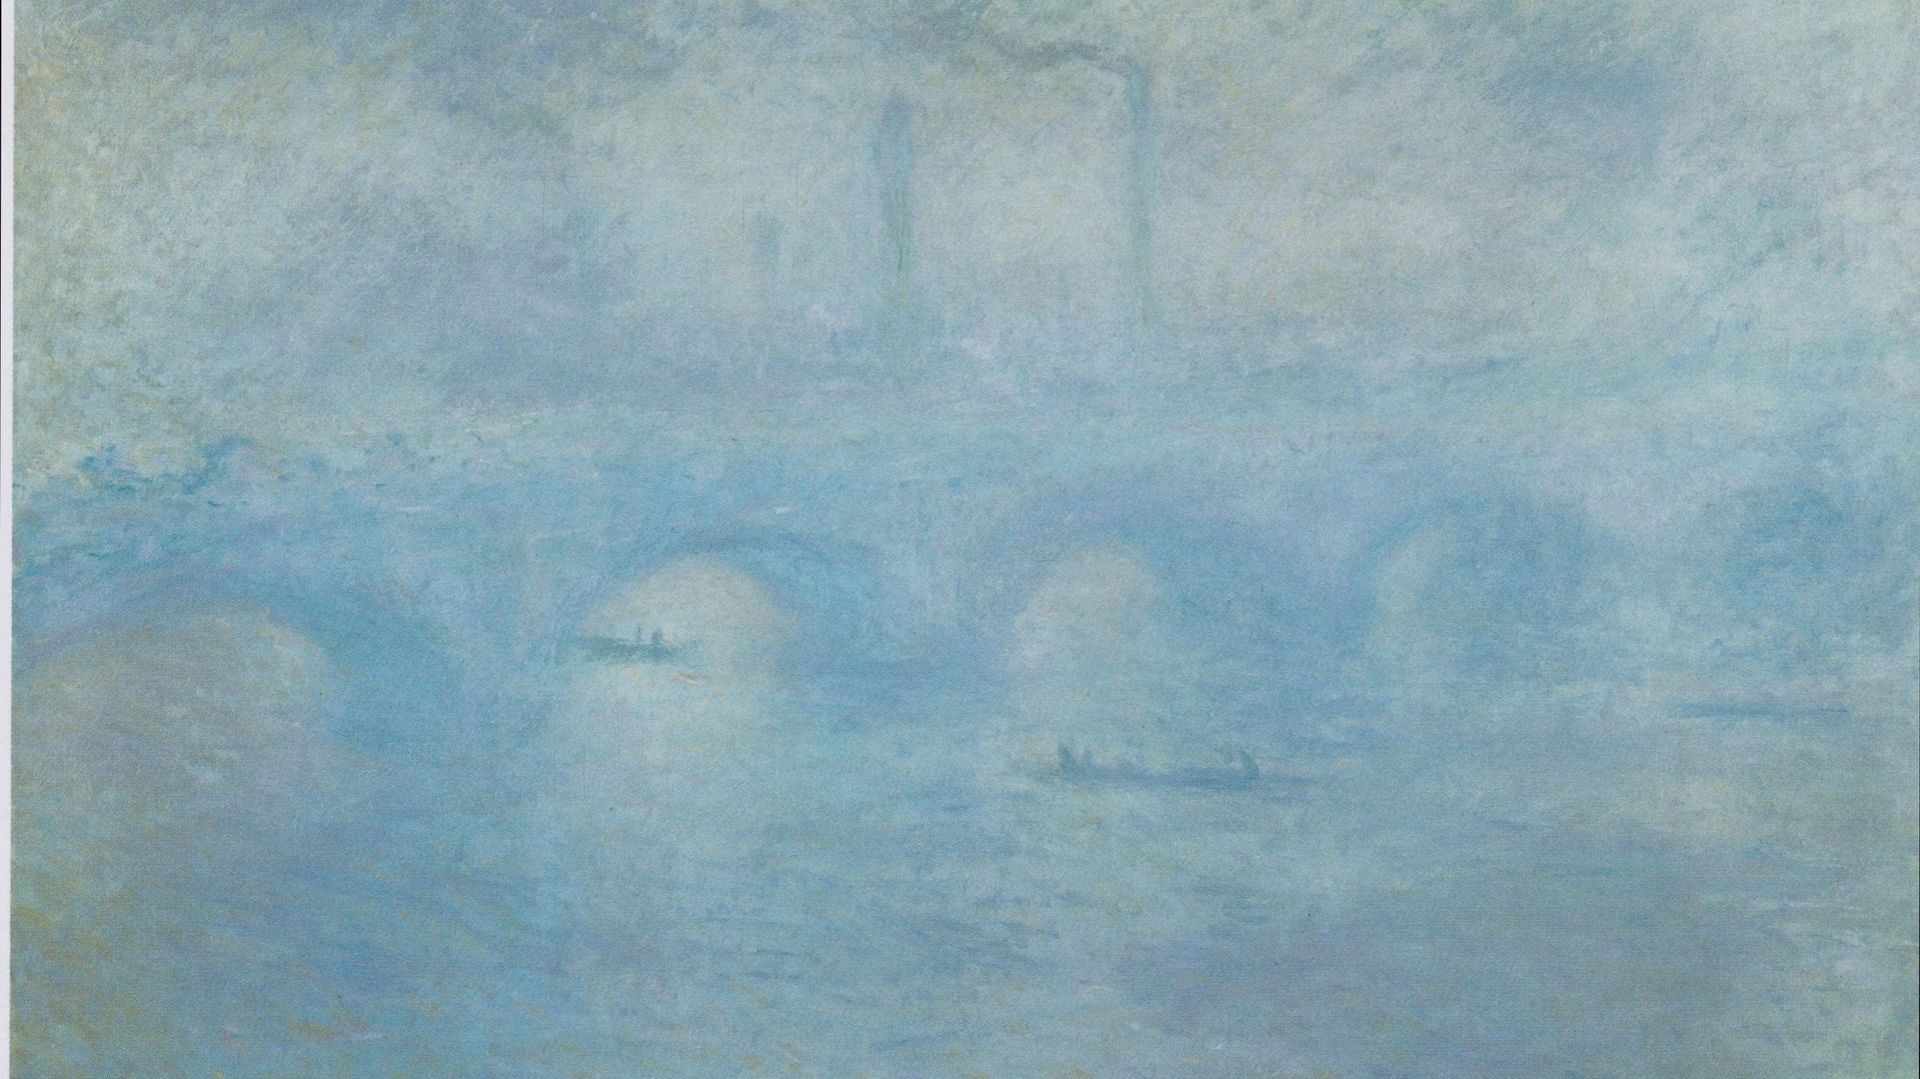 Le pont de Waterloo vu par Monet